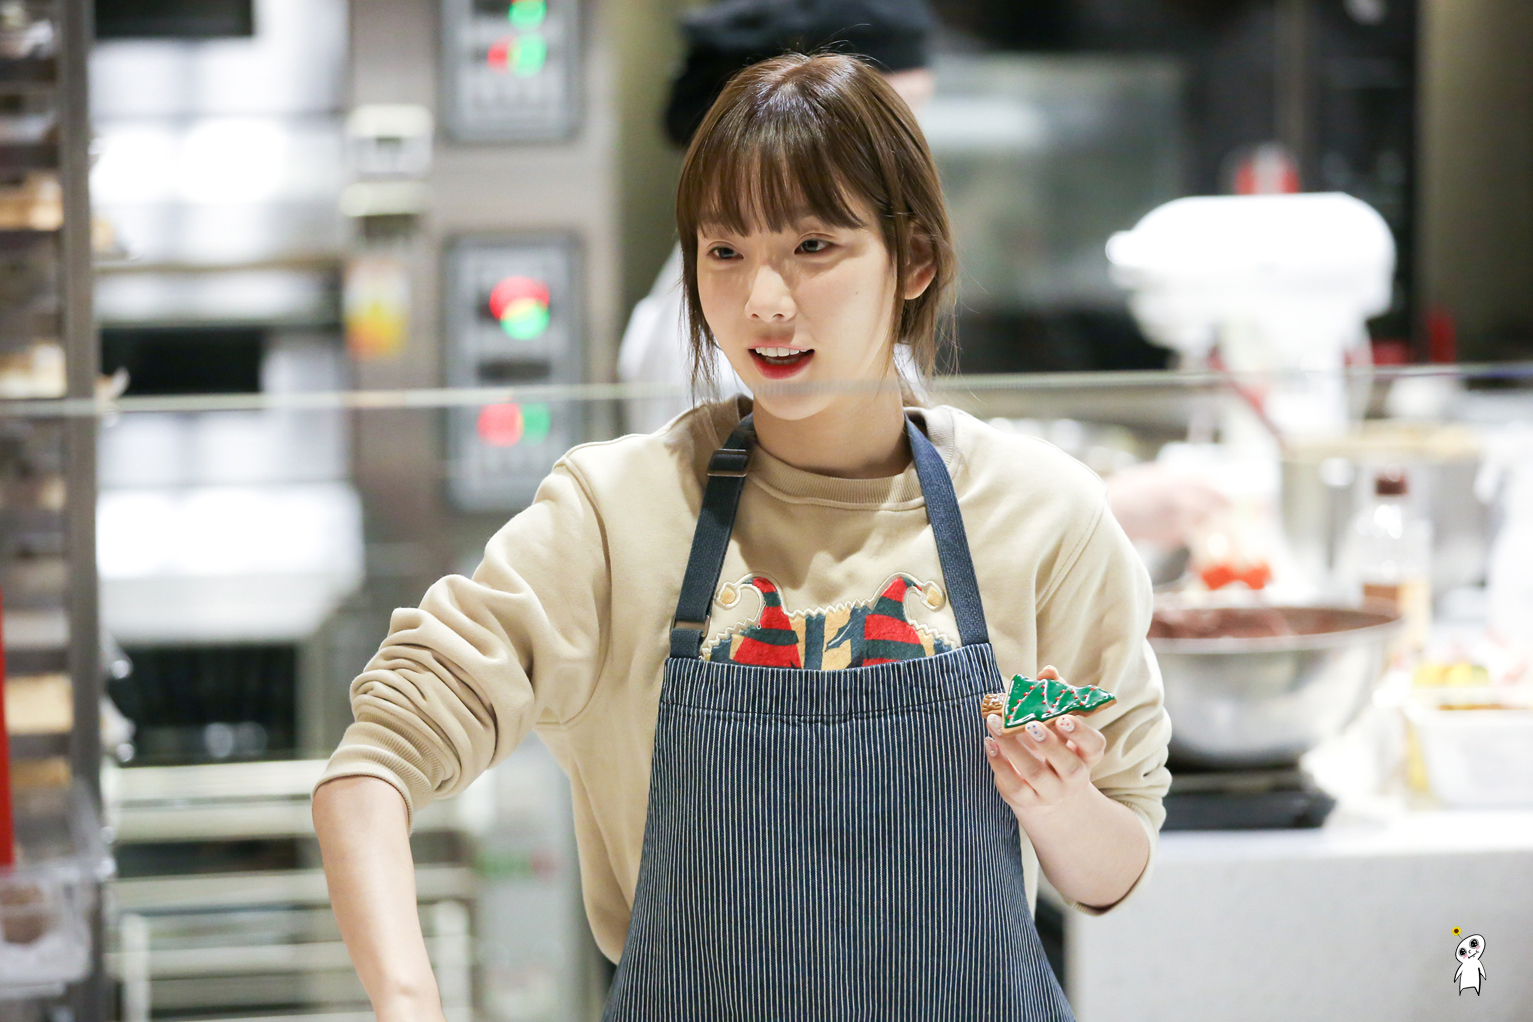 [PIC][20/21-12-2016]TaeYeon xuất hiện tại SUM CAFÉ để tham gia làm bánh Giáng Sinh vào chiều nay - Page 6 211CCA405868EC6720DC12